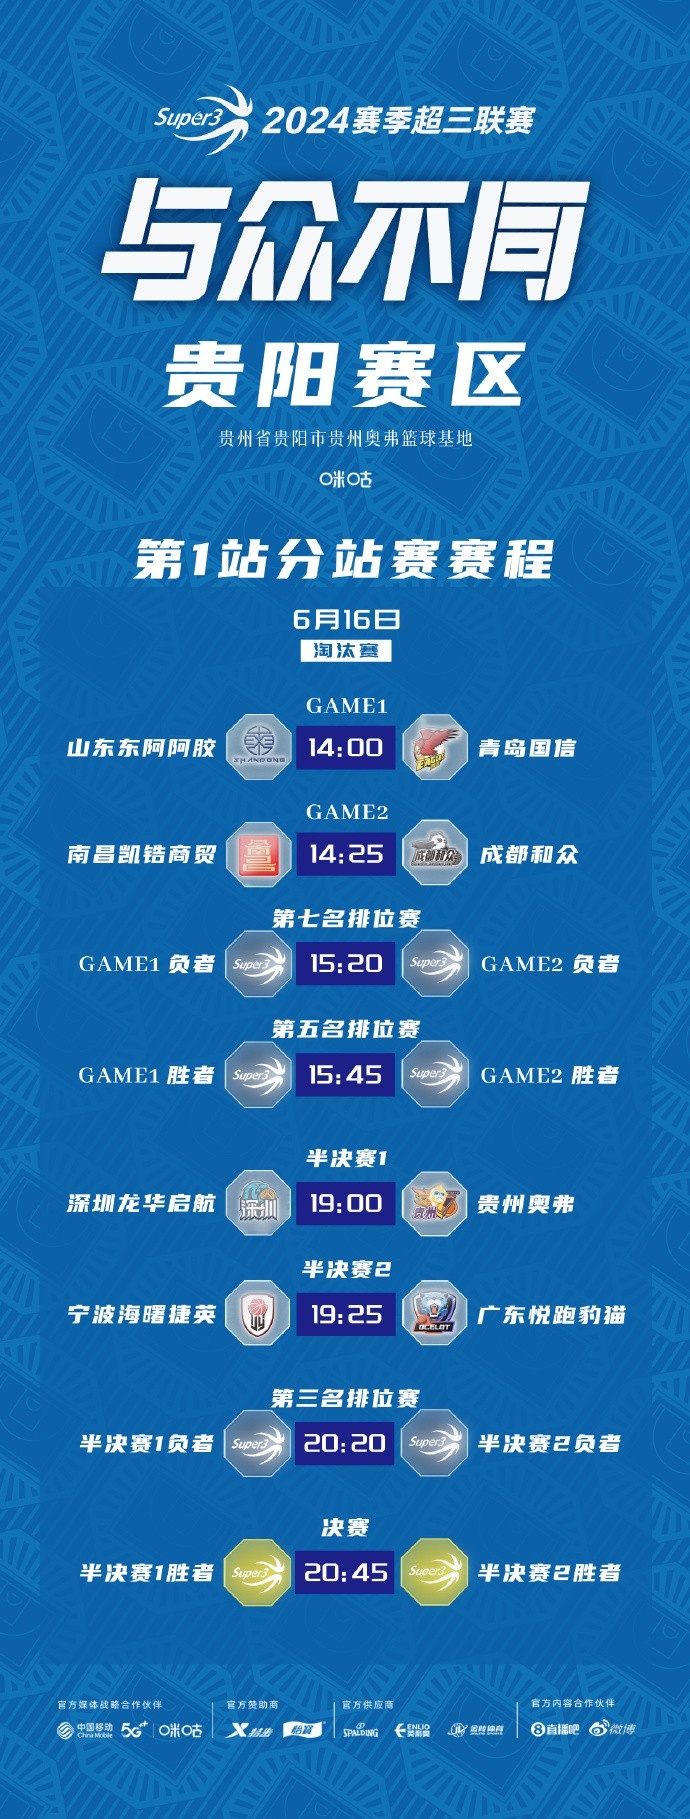 【6月16日赛程预告】超三贵阳武汉赛区首站比赛Day2淘汰赛赛程